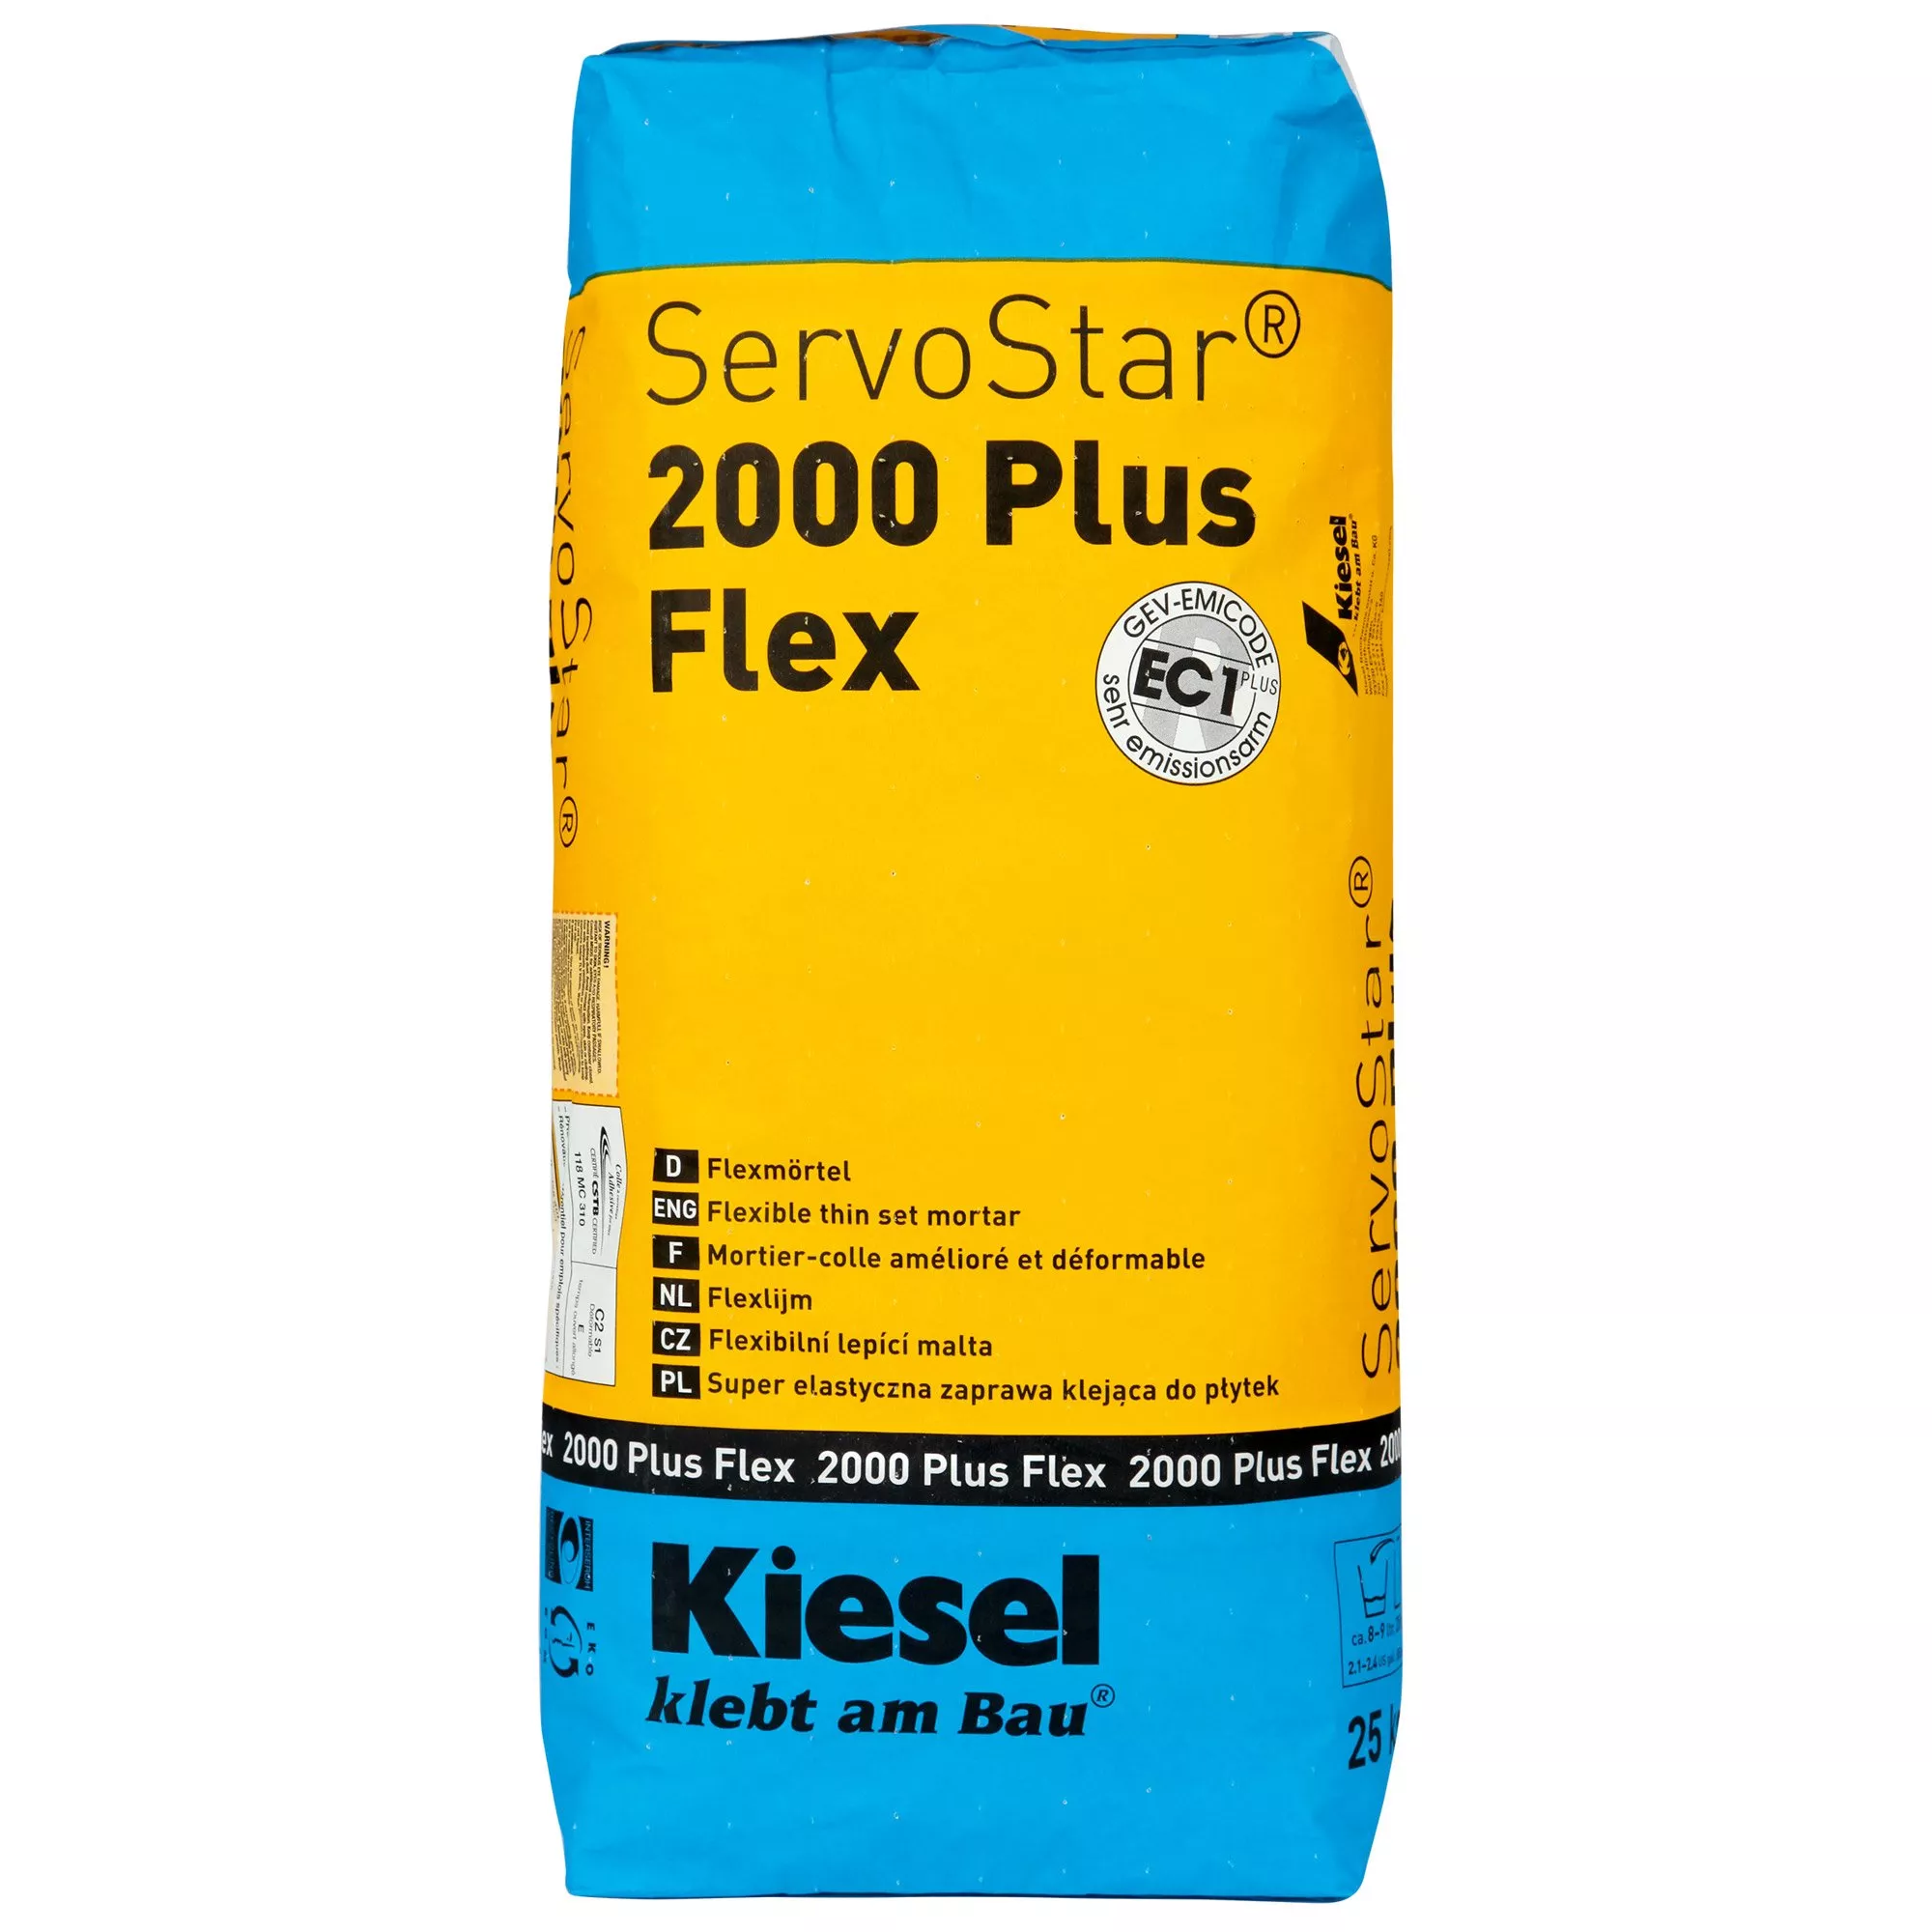 Adesivo para azulejos Kiesel Servostar 2000 - argamassa cimentícia de camada fina flexível e modificada com plástico (25KG)